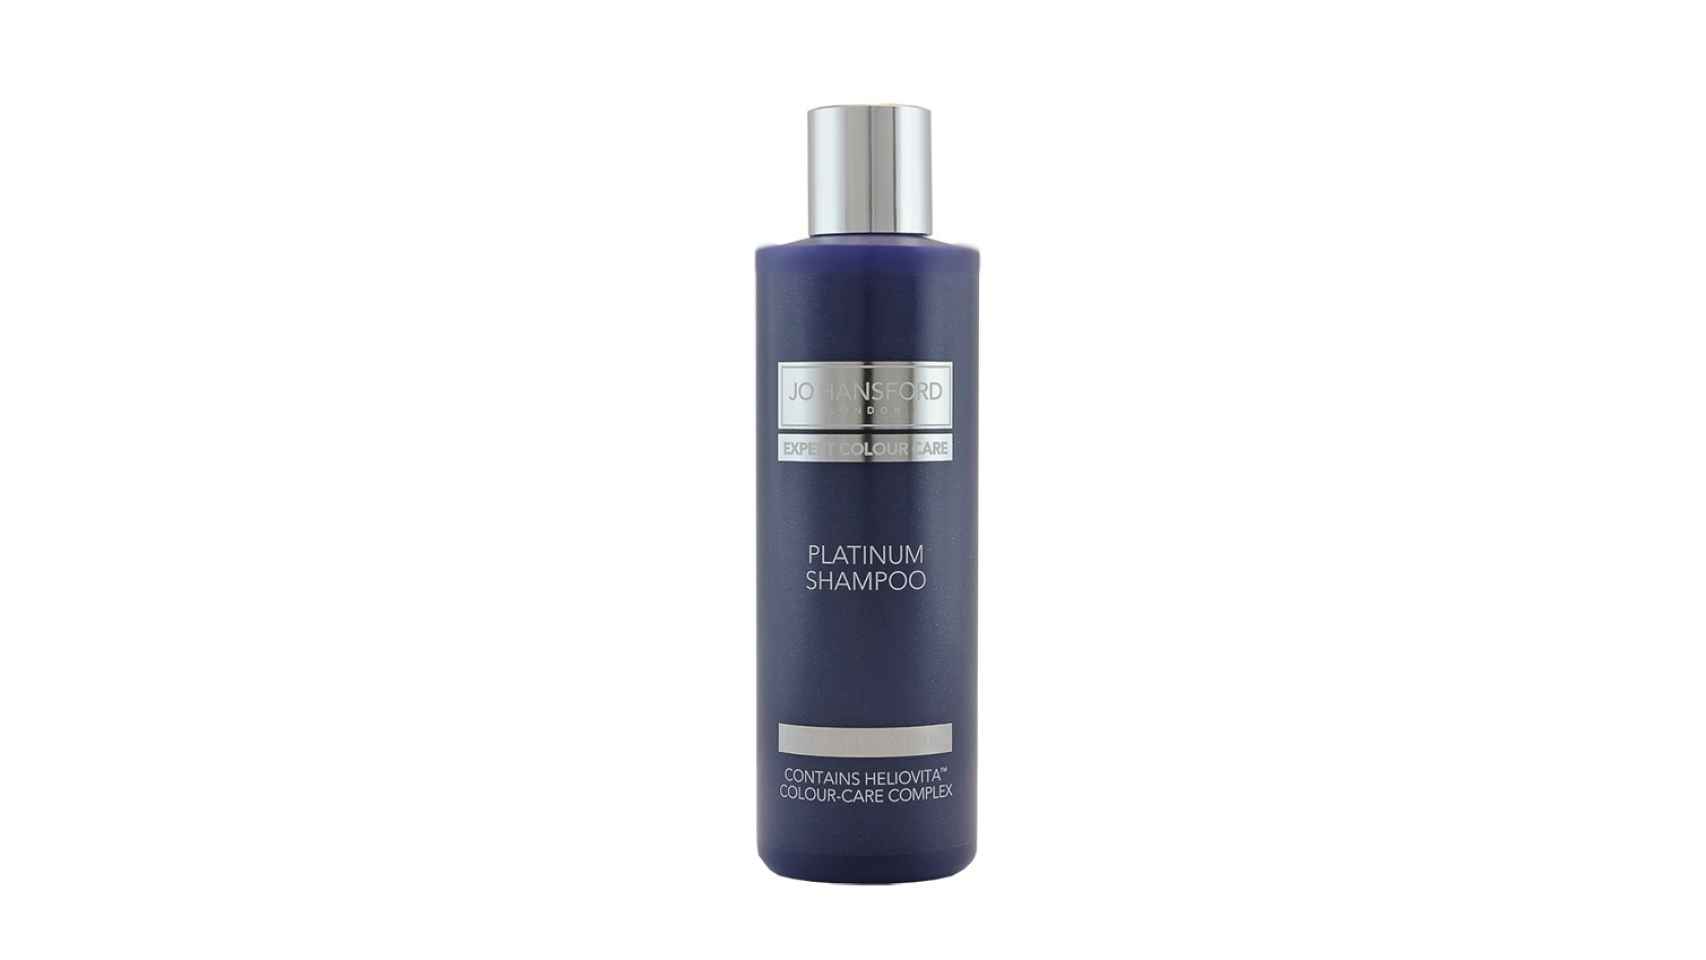 Platinum Shampoo de Jo Hansford.